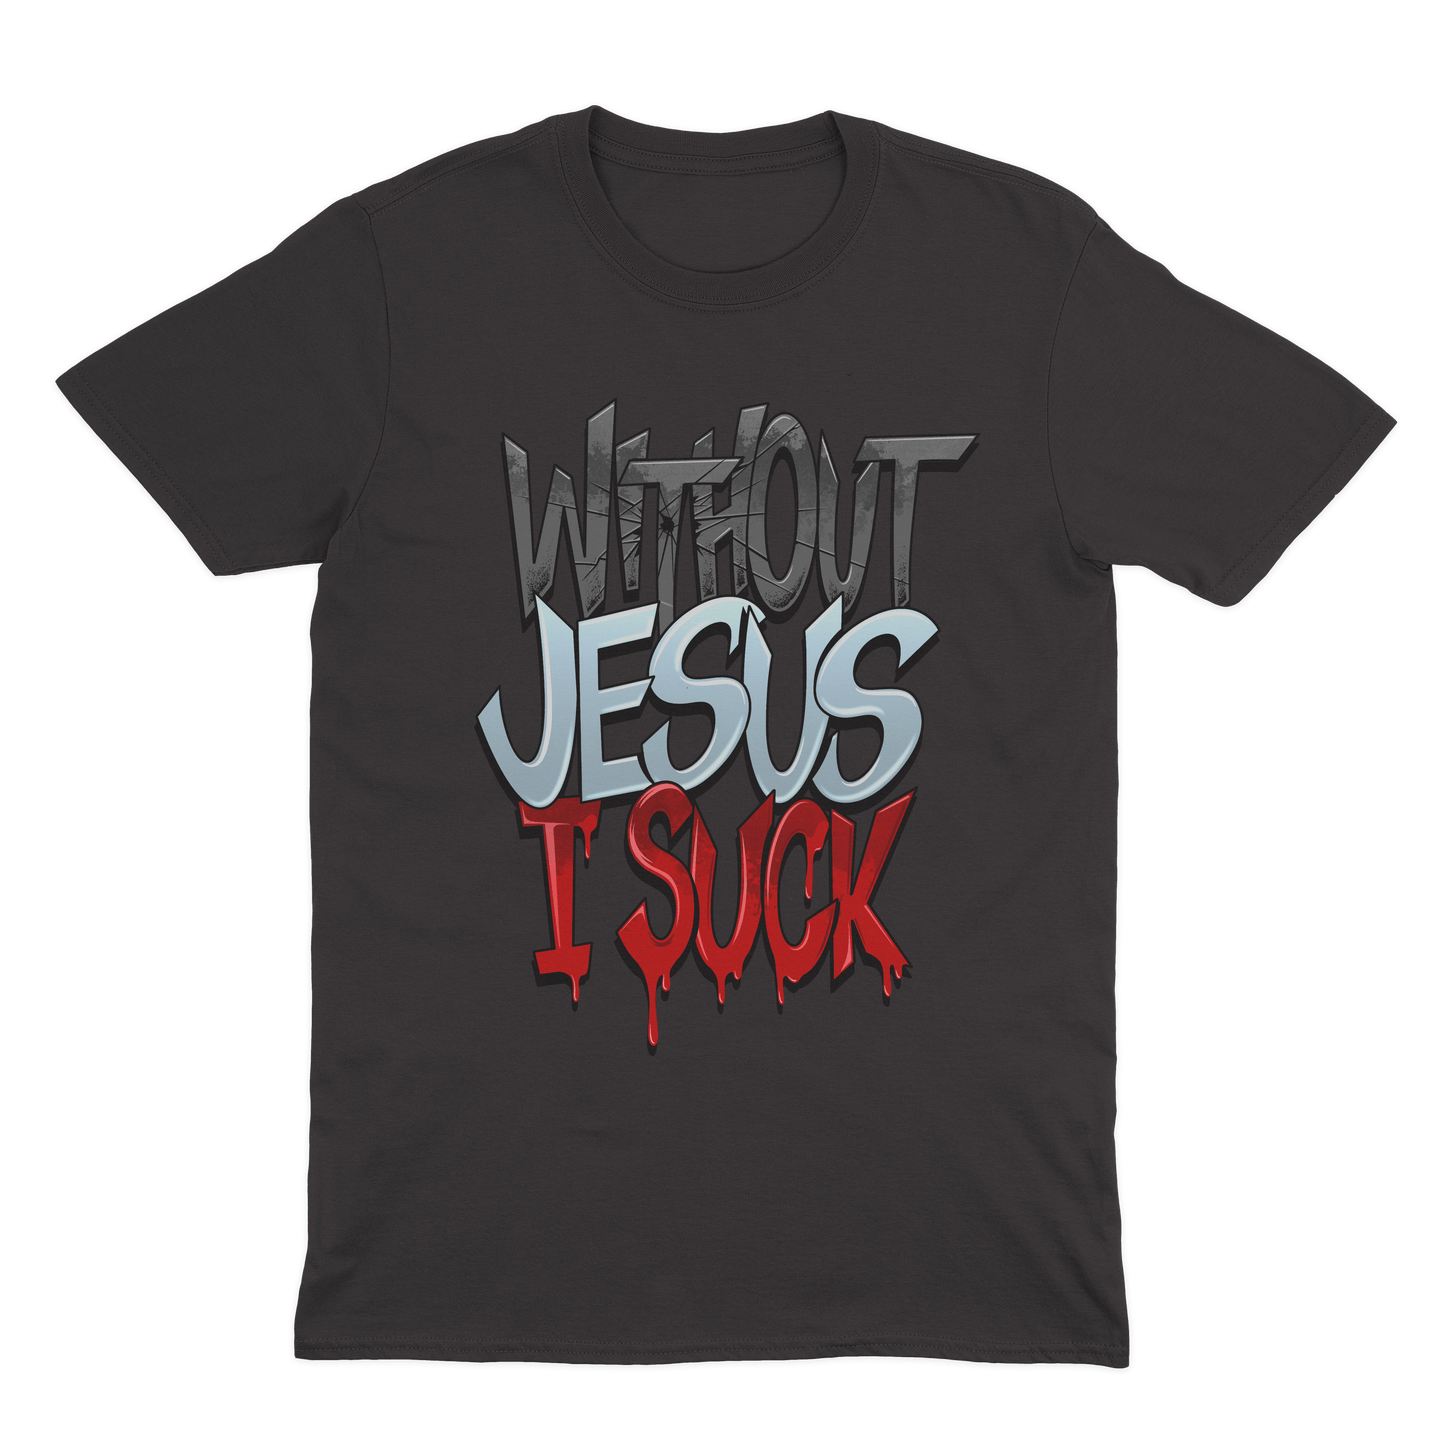 Holy Gabbana Without Jesus I Suck Shirt - Black